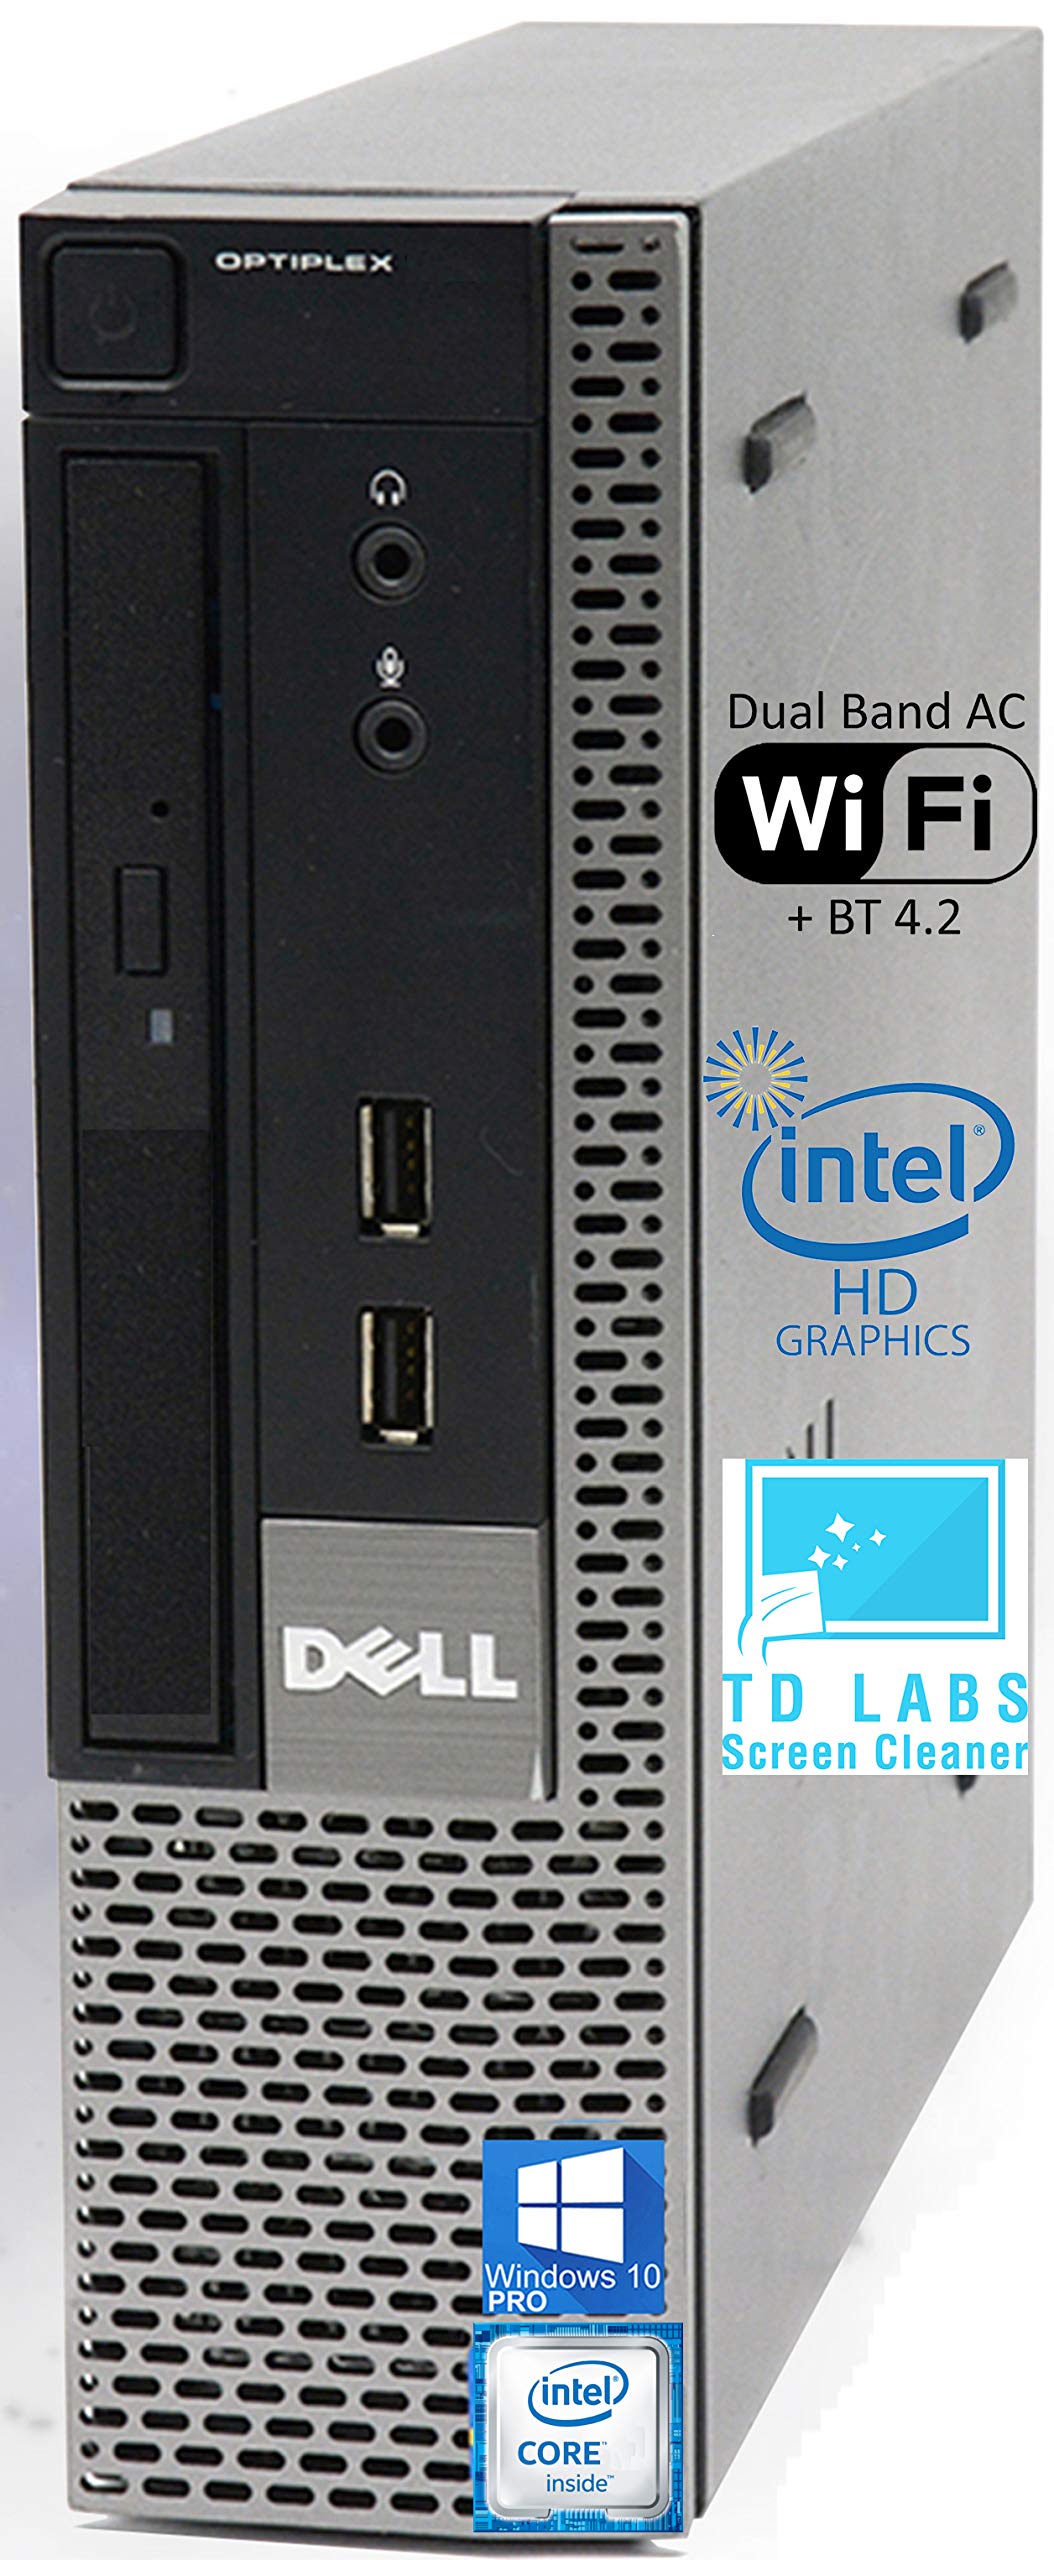 Dell Optiplex 9020 USFF Desktop Computer with Intel i5-4570S Upto 3.6GHz, HD Graphics 4600 4K Support, 8GB RAM, 256GB SSD, DisplayPort, HDMI, DVD, Wi-Fi, Bluetooth - Windows 10 Pro (RENEWED)